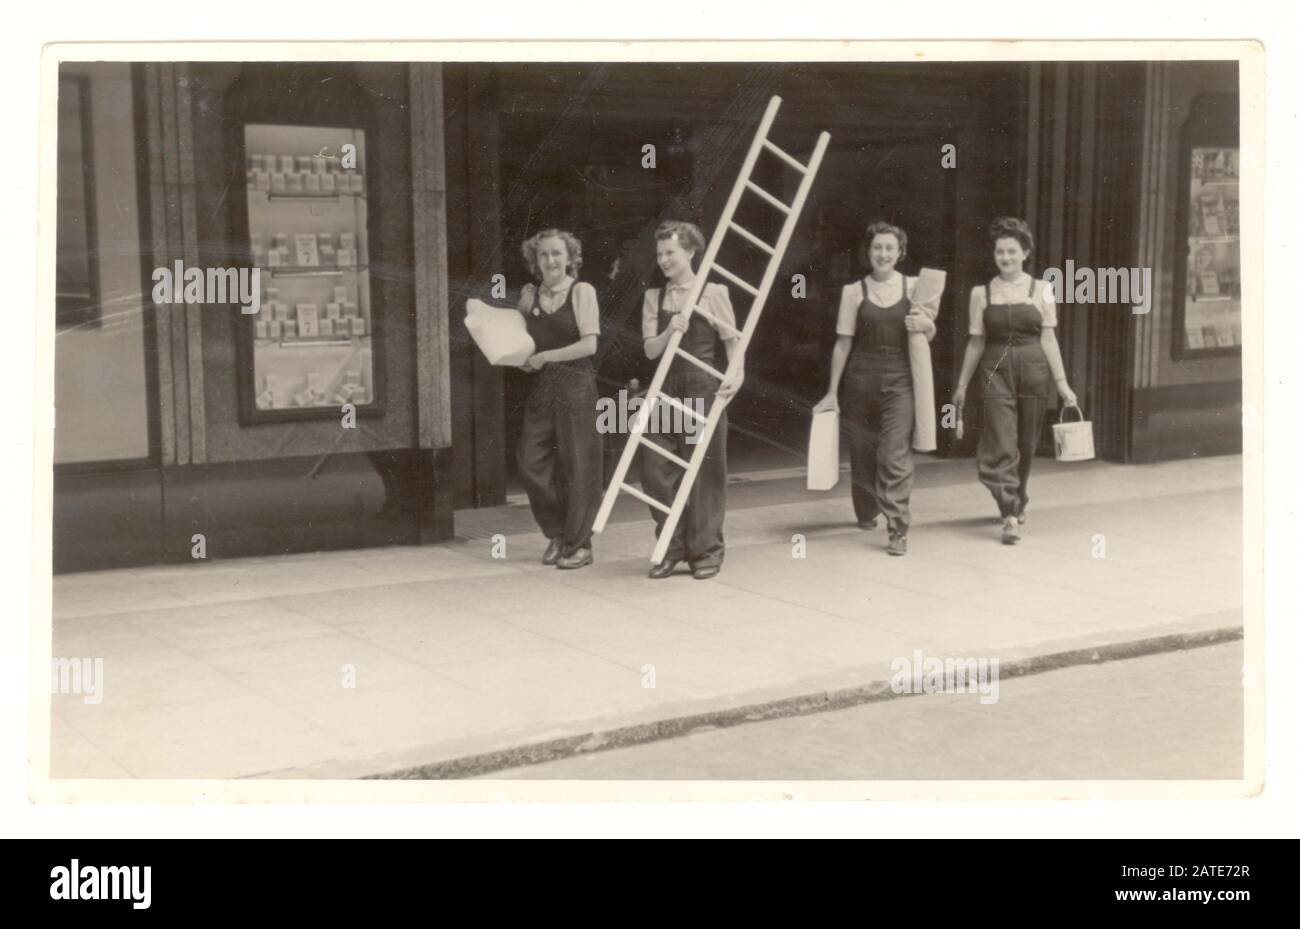 WW2 era foto di donne dipendenti, grandi magazzini vetrine indossando dungaree che trasportano vernice, tessuto e un manichino che cammina attraverso l'ingresso del negozio, datato 1942, Regno Unito Foto Stock